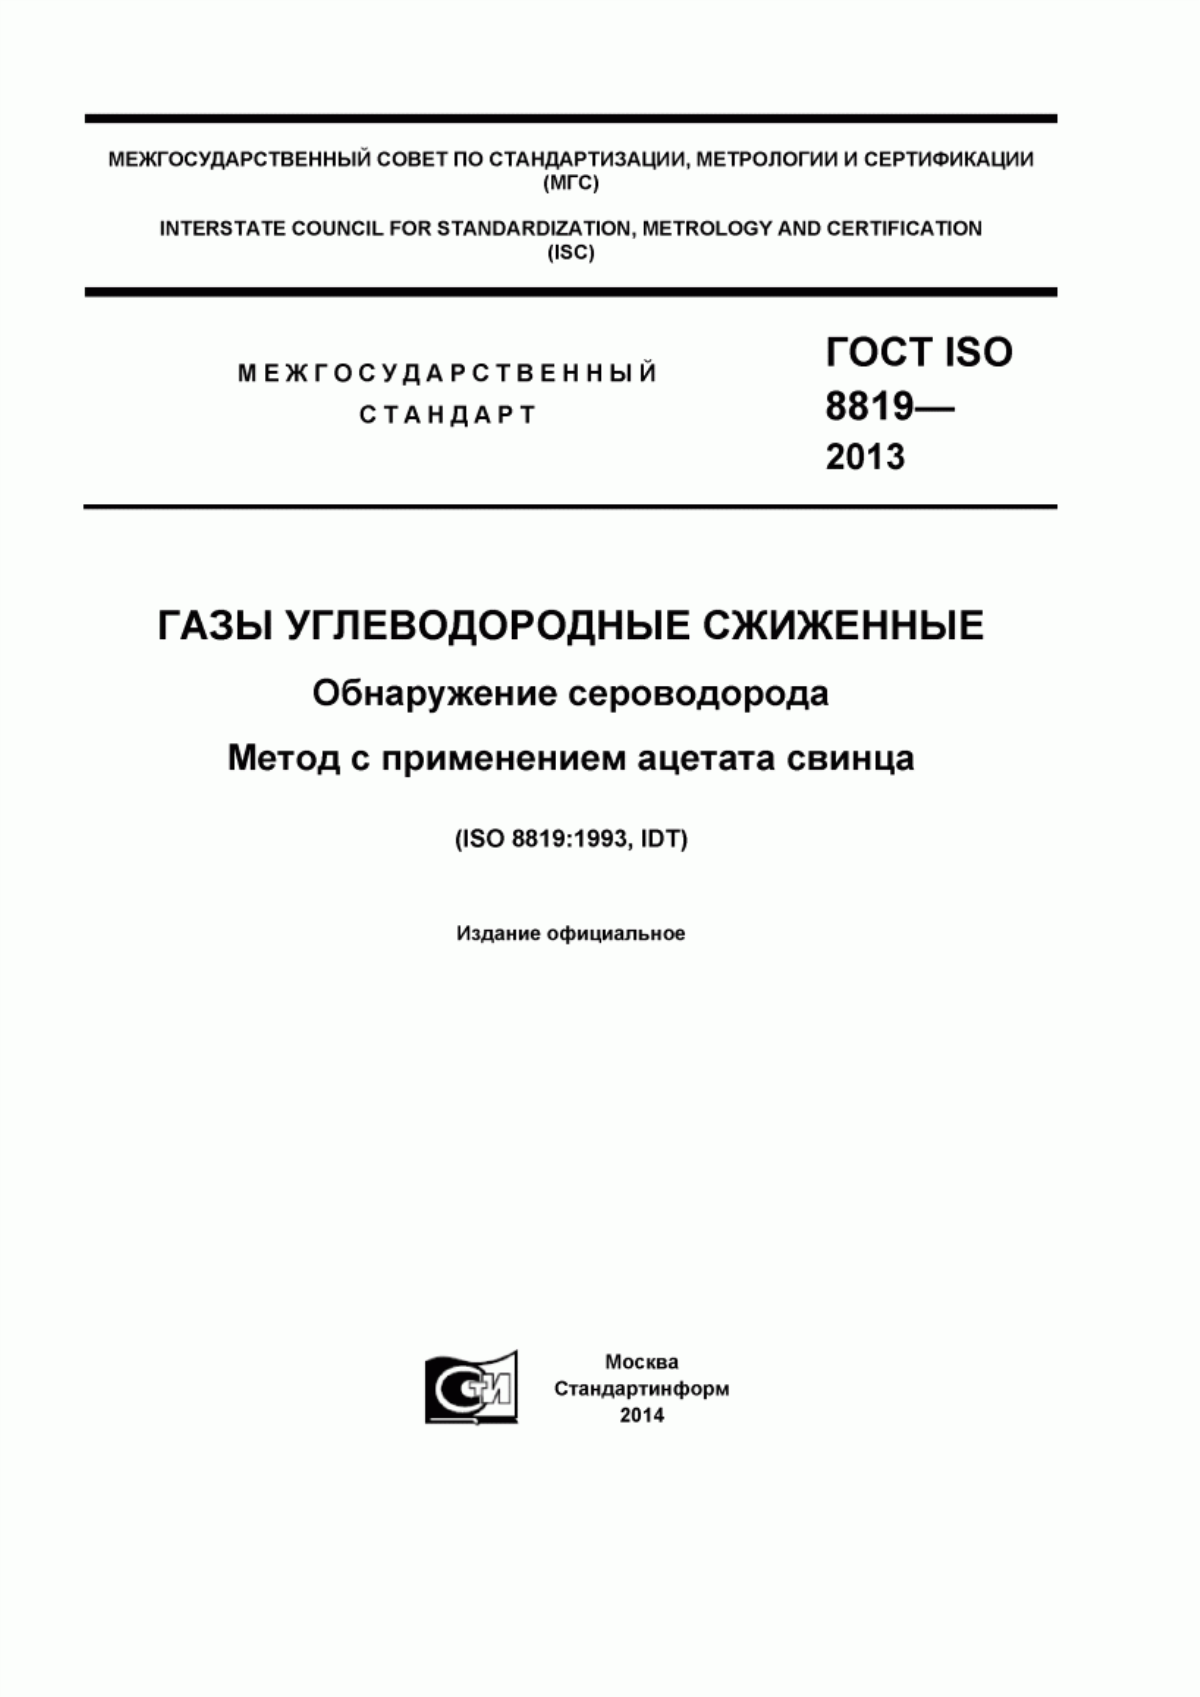 ГОСТ ISO 8819-2013 Газы углеводородные сжиженные. Обнаружение сероводорода. Метод с применением ацетата свинца